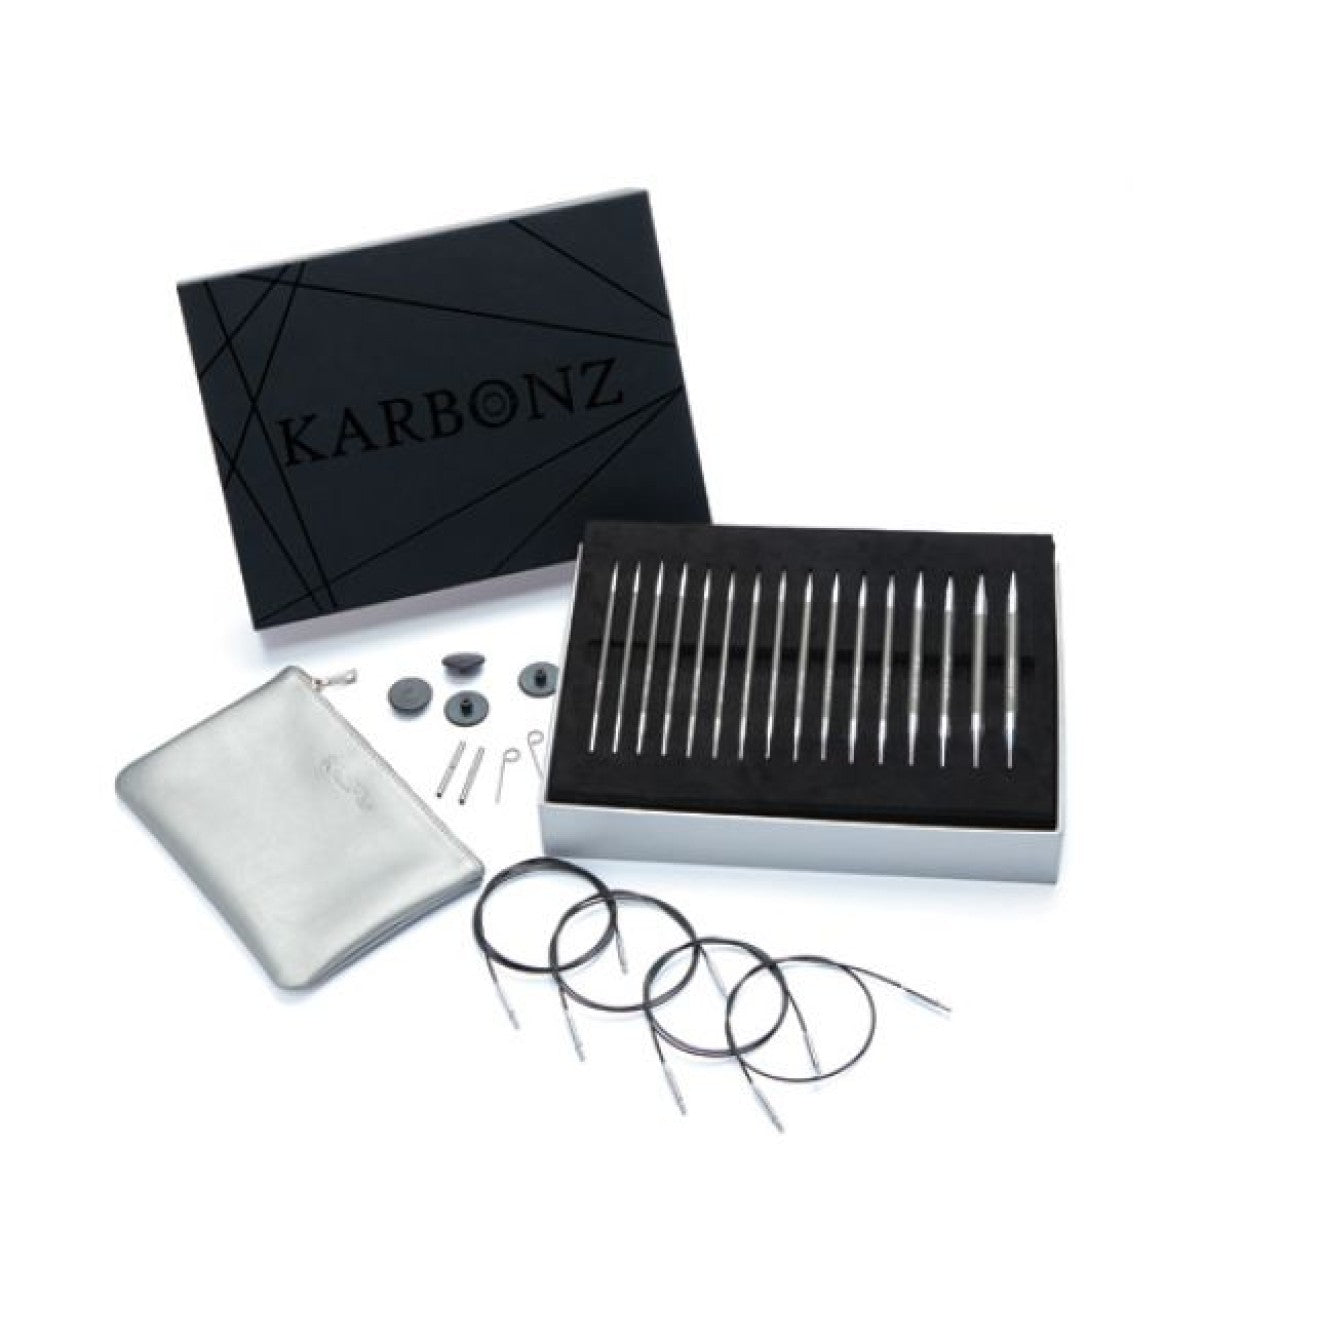 Nadelset Deluxe auswechselbare Nadelspitzen Karbonz Box of Joy, 8 Paar 3,5 - 8,0 mm